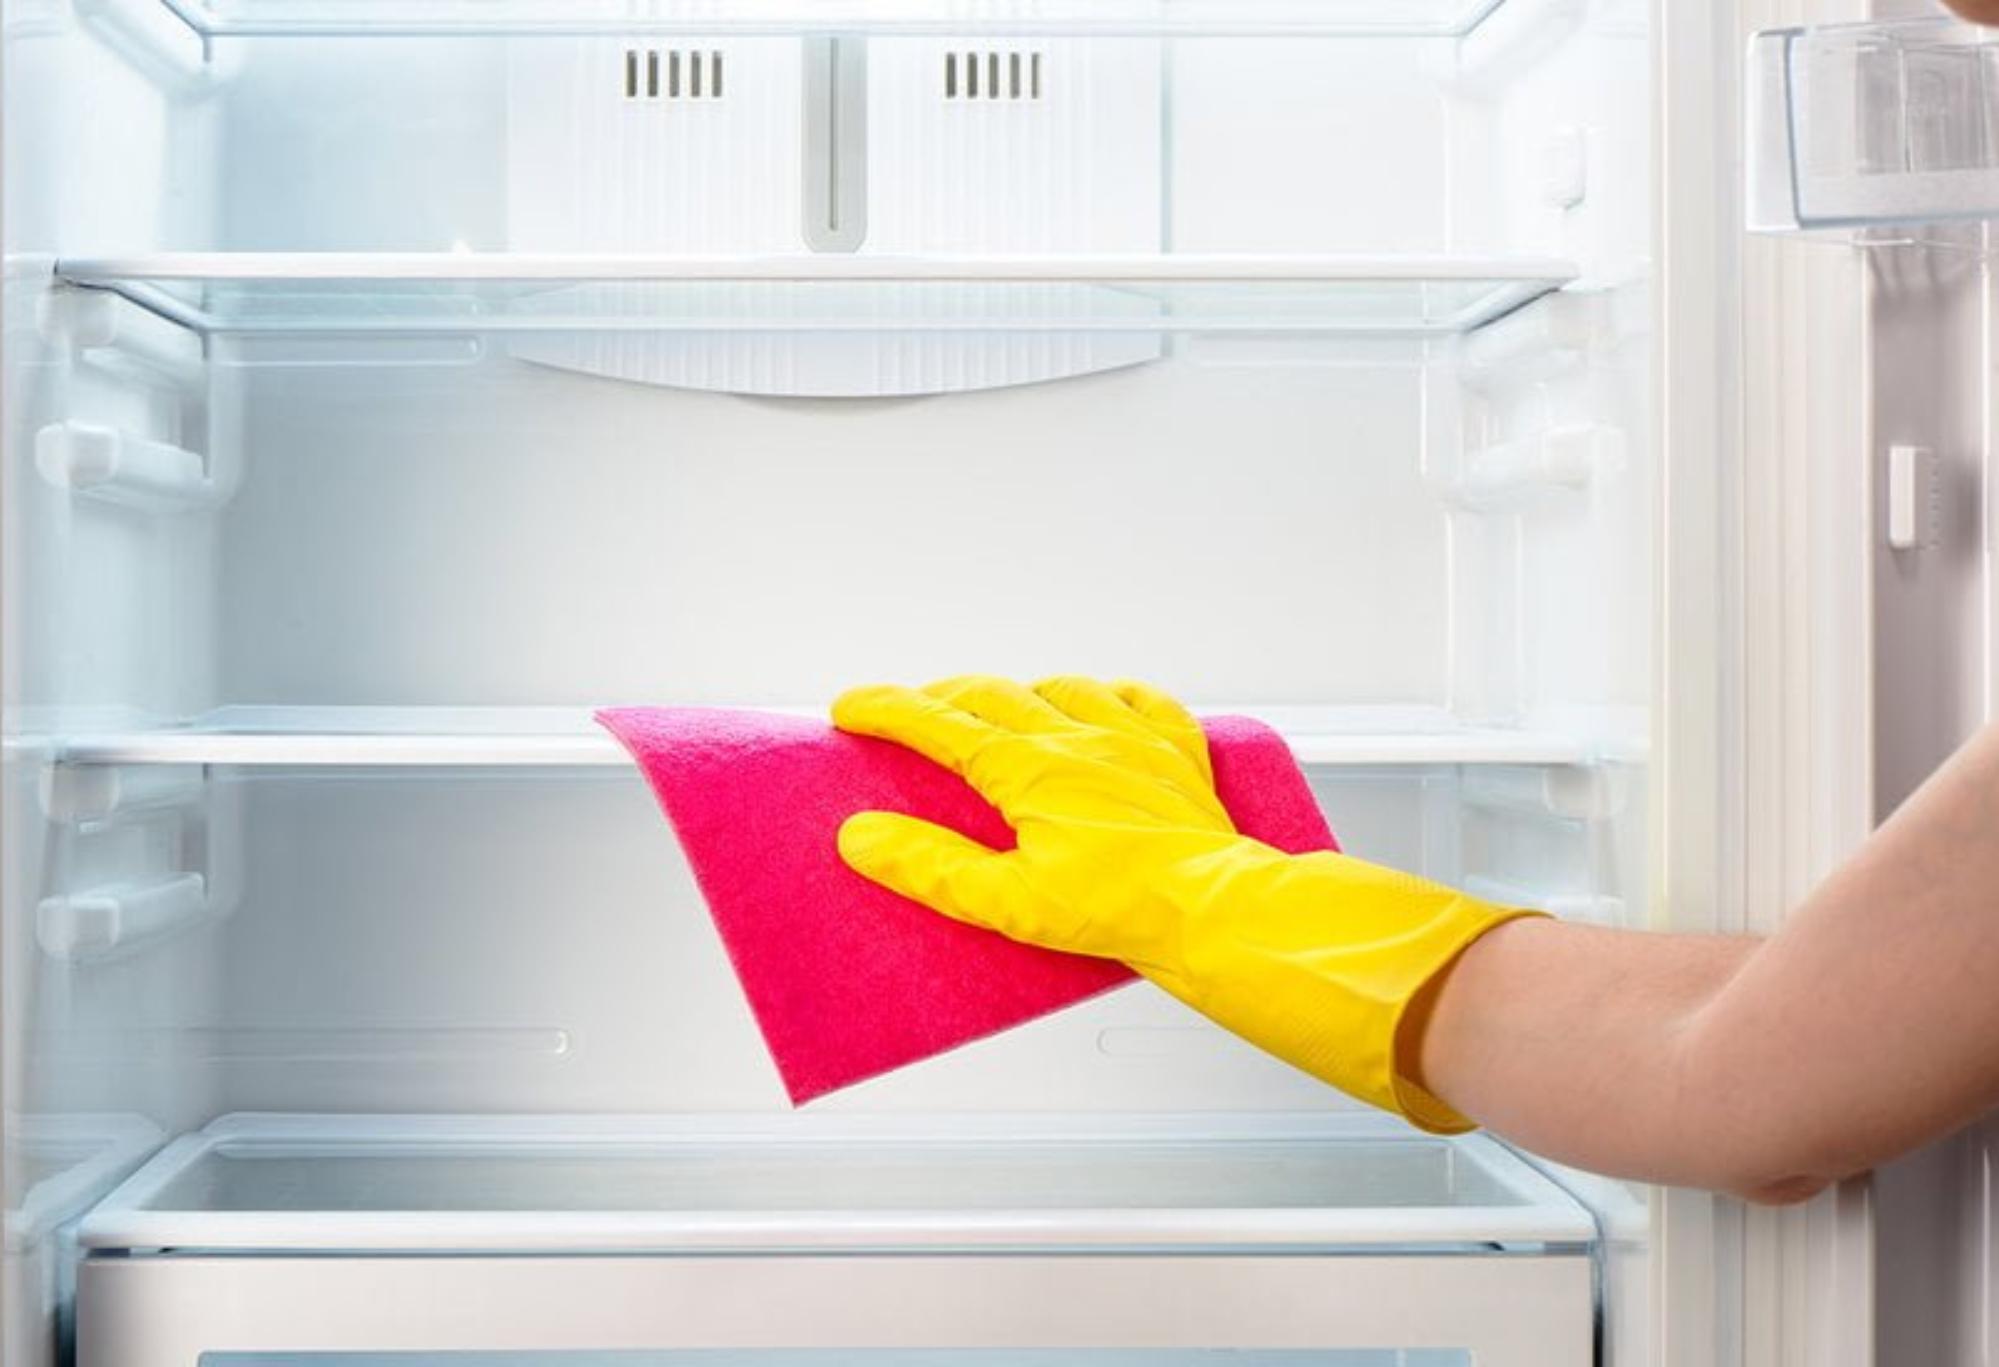 Κάντε το ψυγείο σας να λάμπει με 3 απλά υλικά που διώχνουν λεκέδες σημάδια και άσχημες μυρωδιές